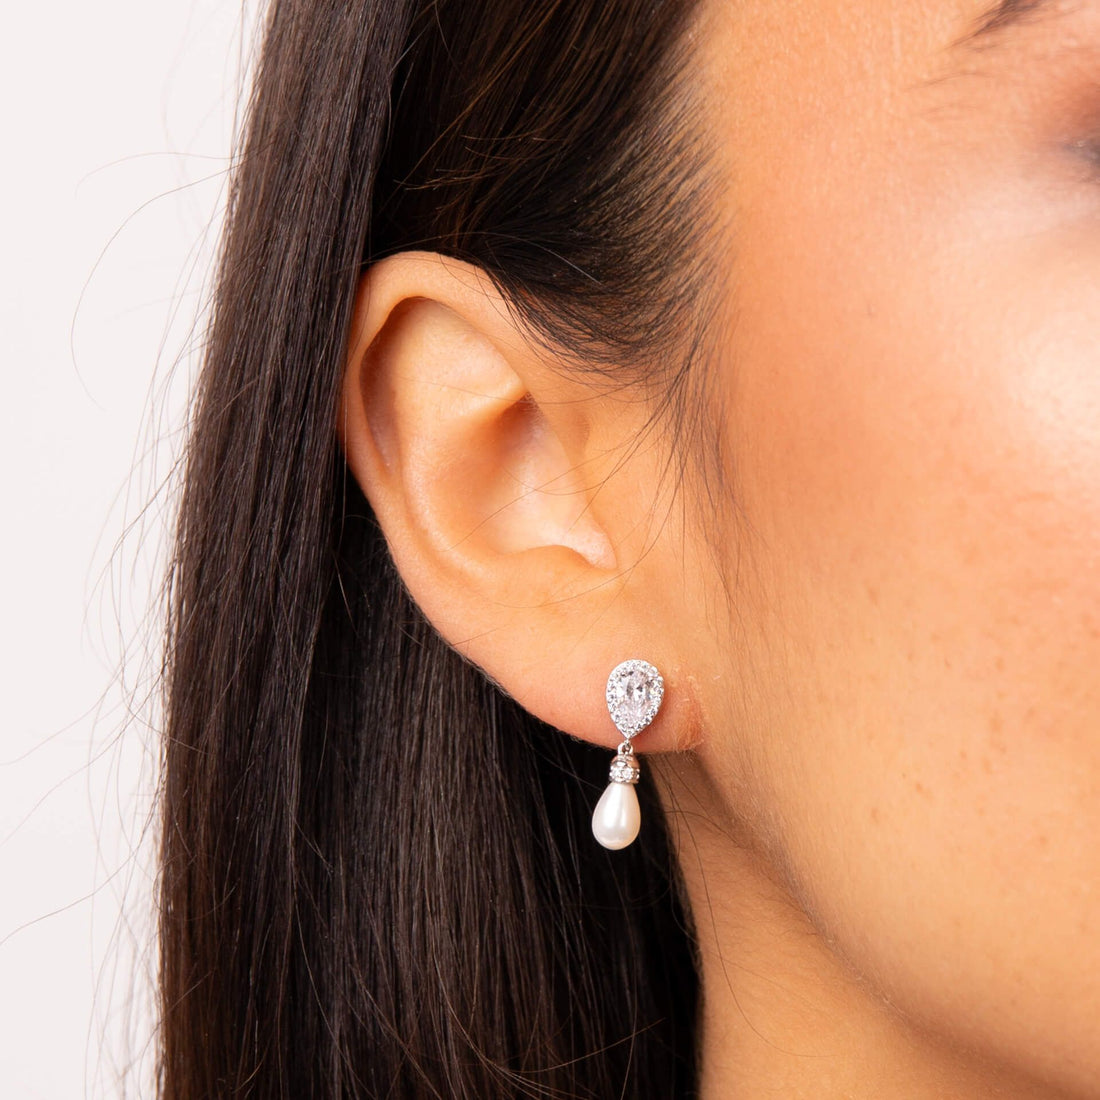 Silver Teardrop Zirconia Earrings with Shell Pearl Drop